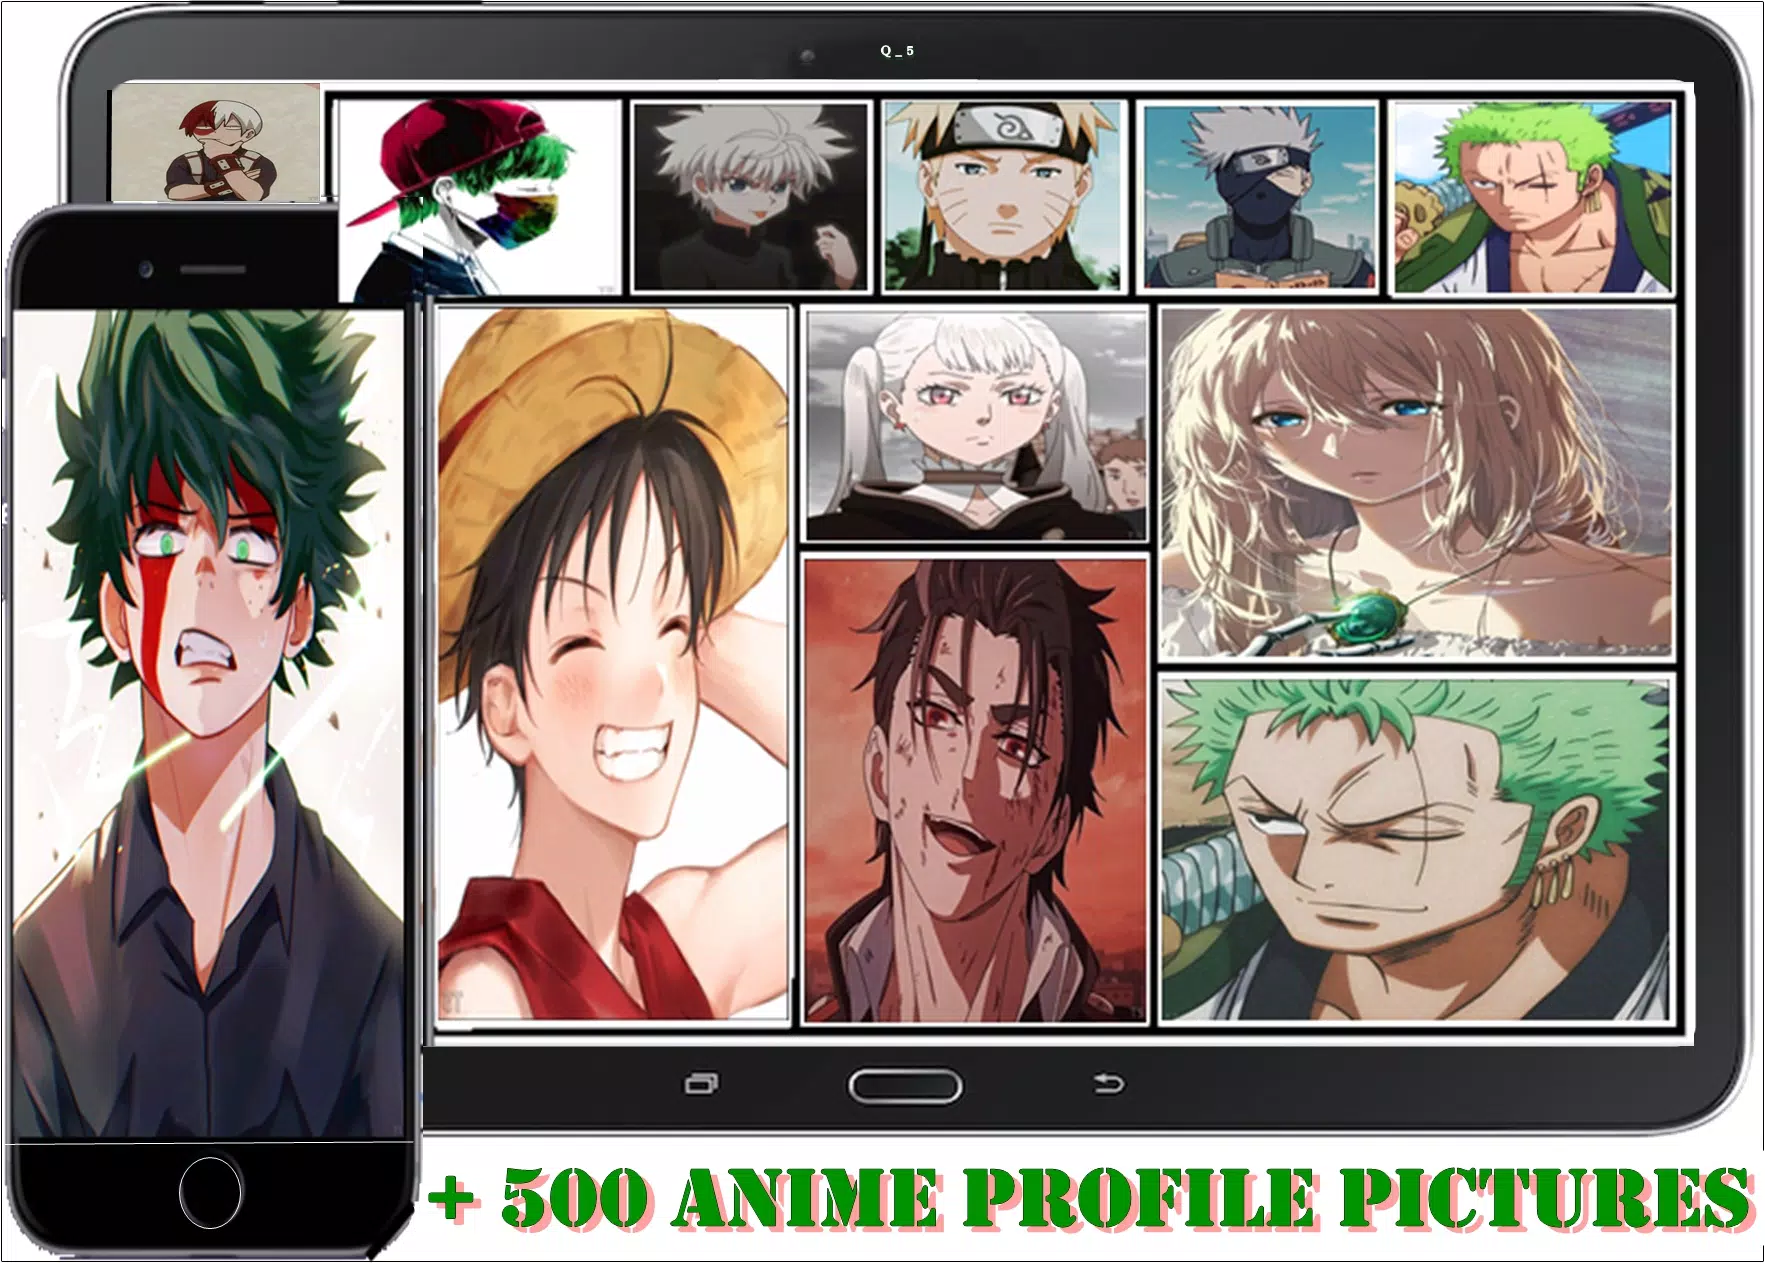 Melhores fotos de animes para perfil masculino 